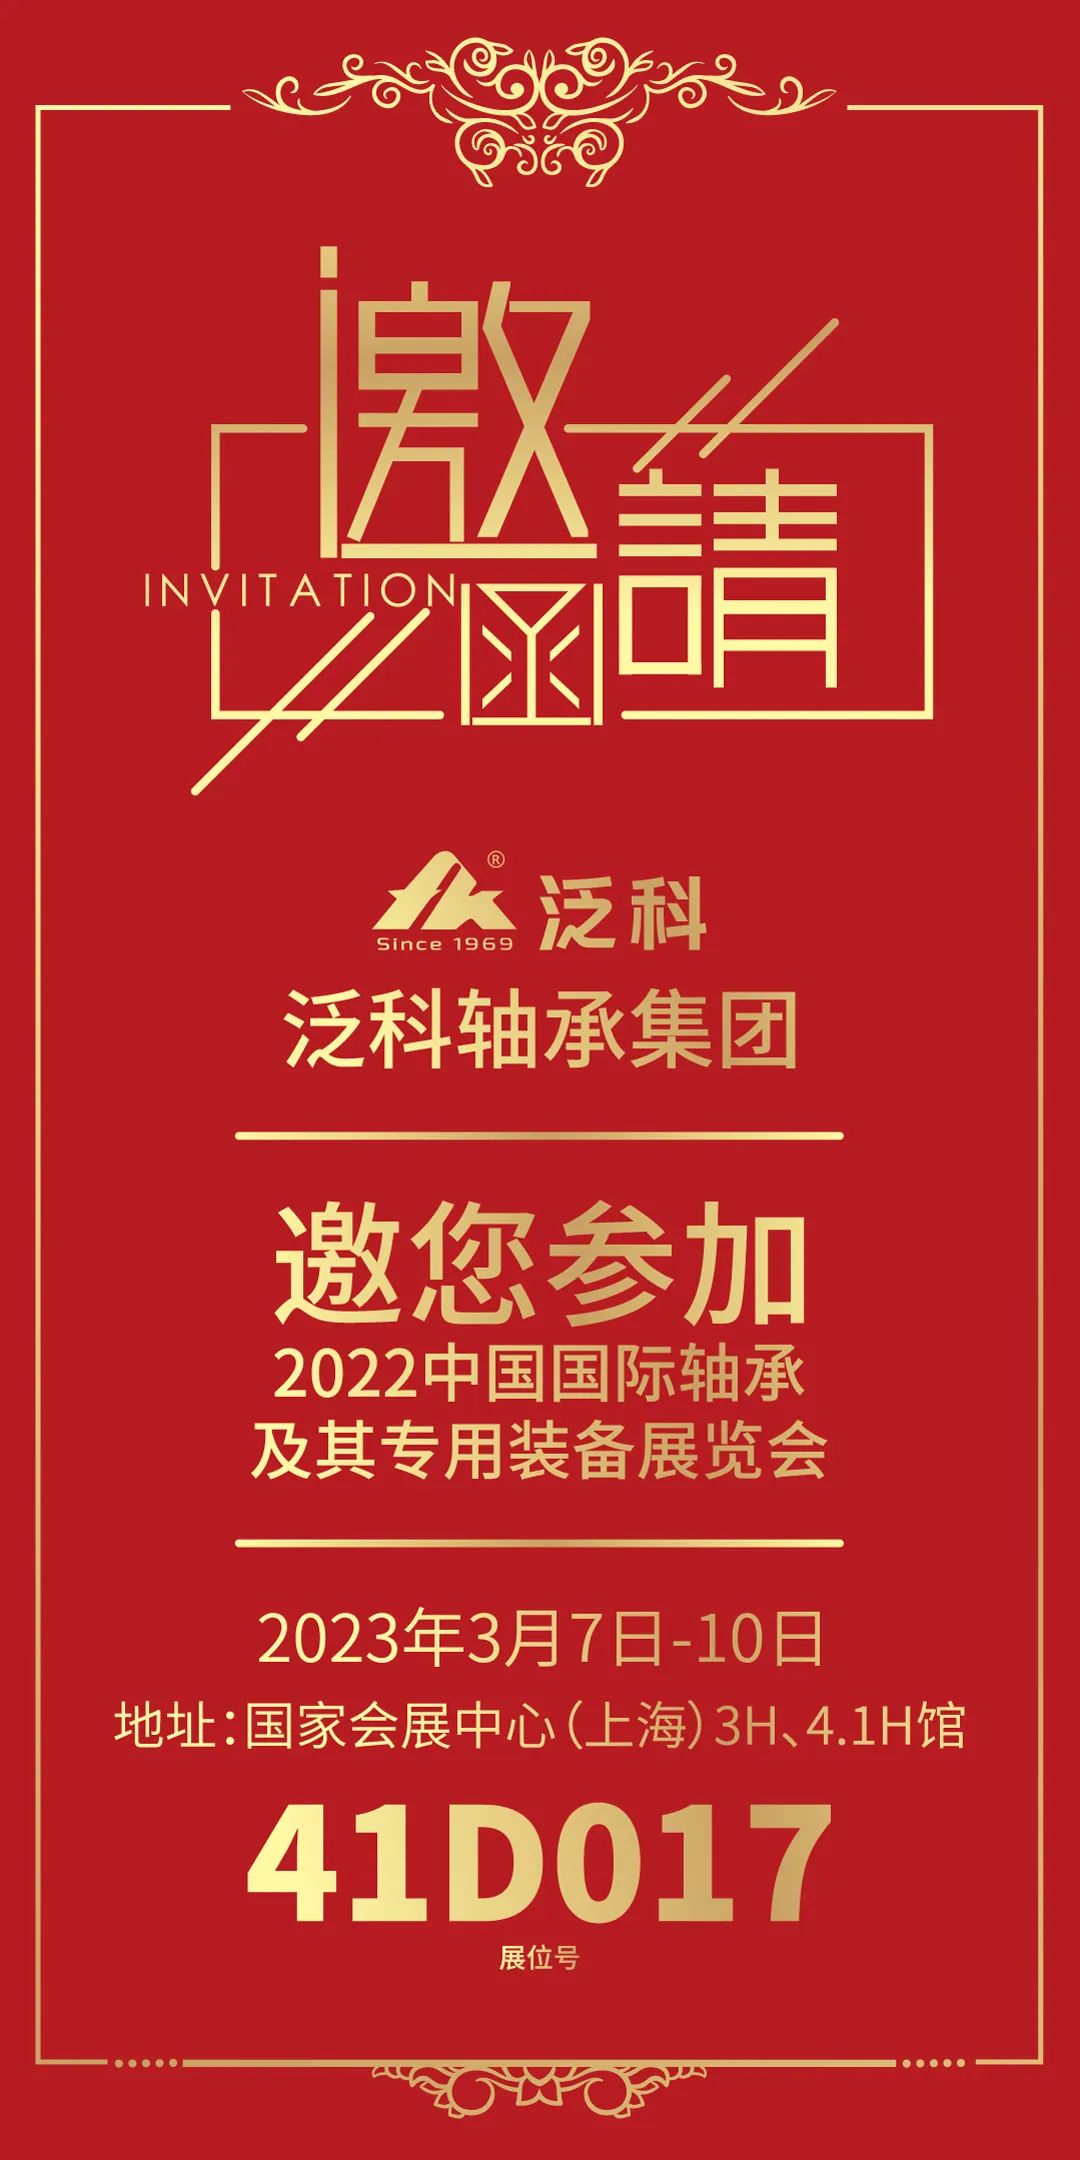 展会邀约·展位号: 41D017，FK邀您一起参加2022中国国际轴承及其<br>专用装备展览会